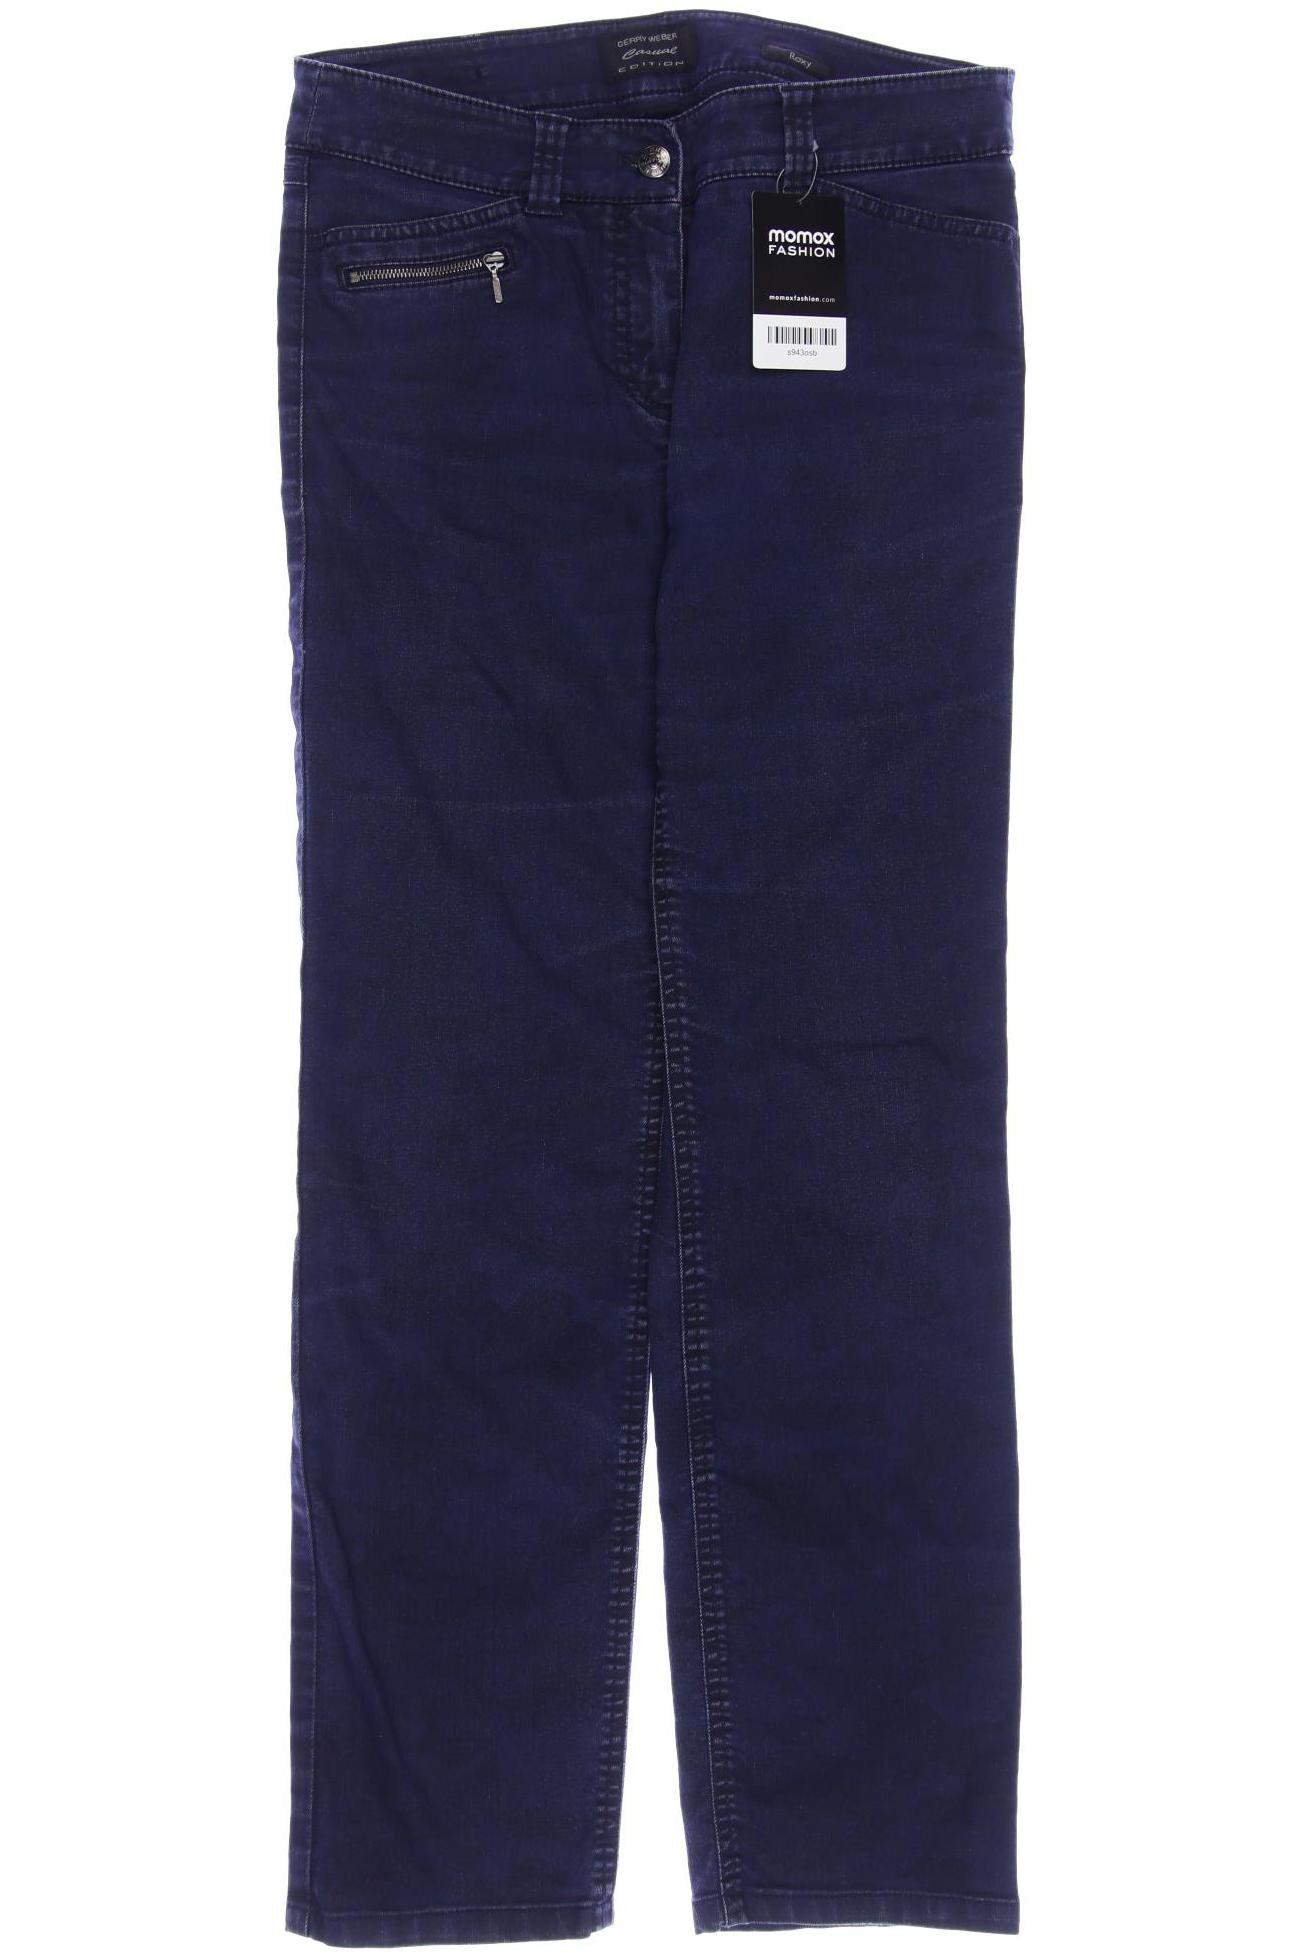 Gerry Weber Damen Jeans, marineblau von Gerry Weber